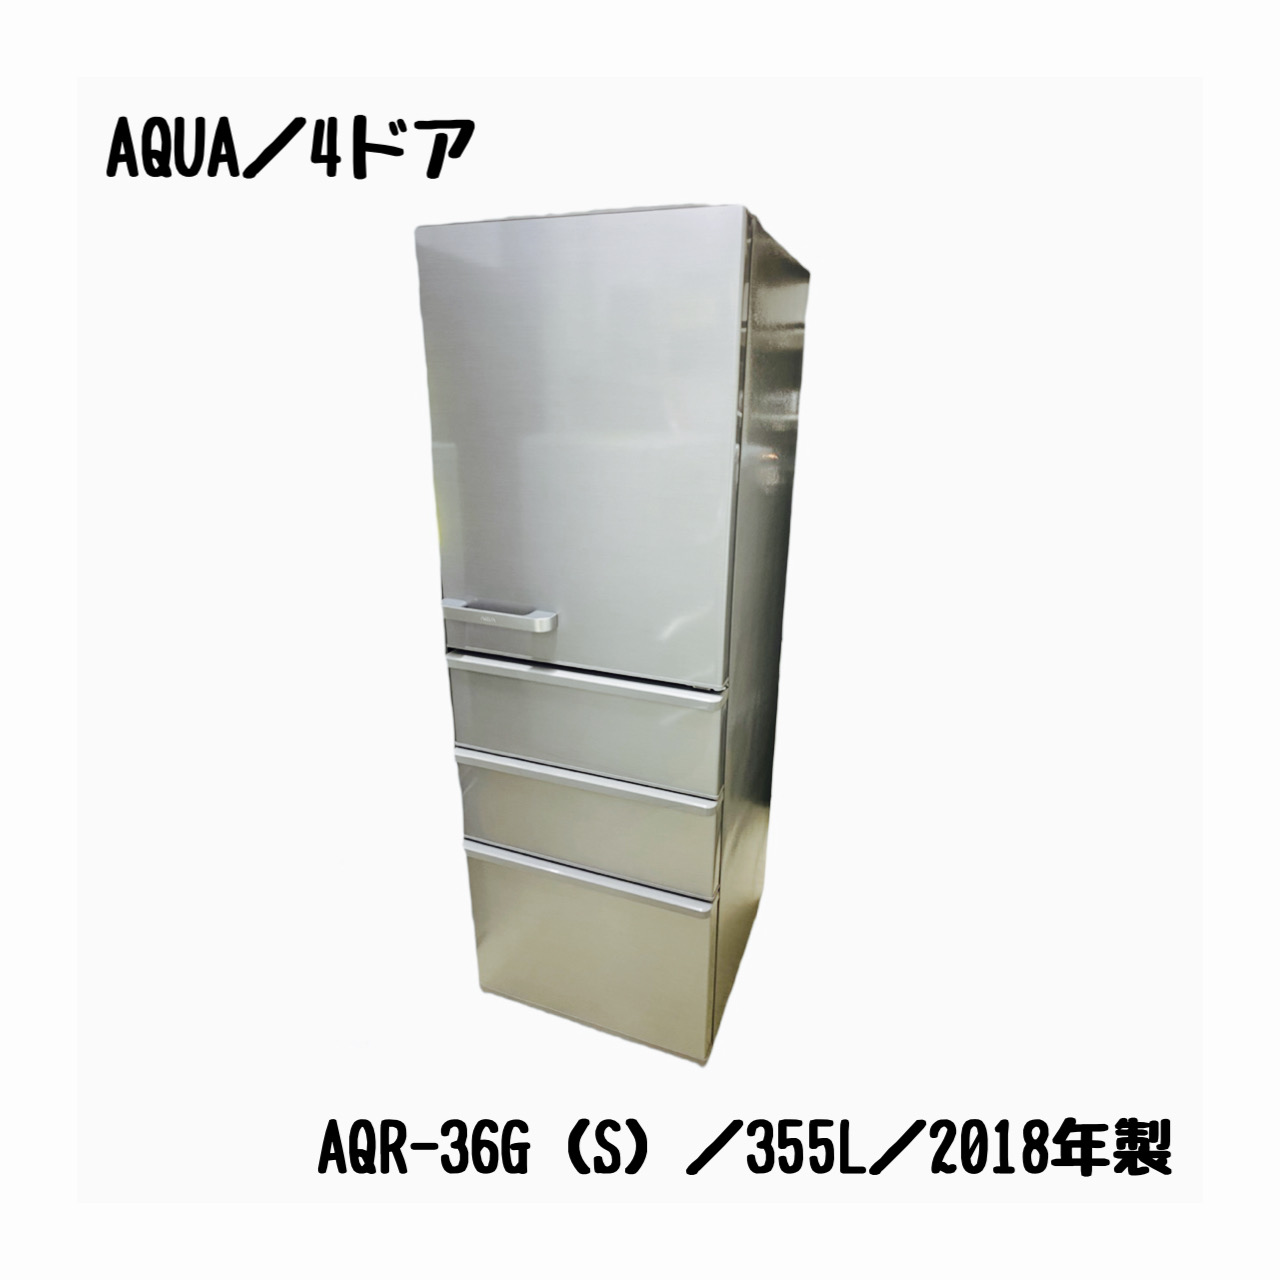 89L〈49L〉AQUA AQR-36G 2018年製 - 冷蔵庫・冷凍庫